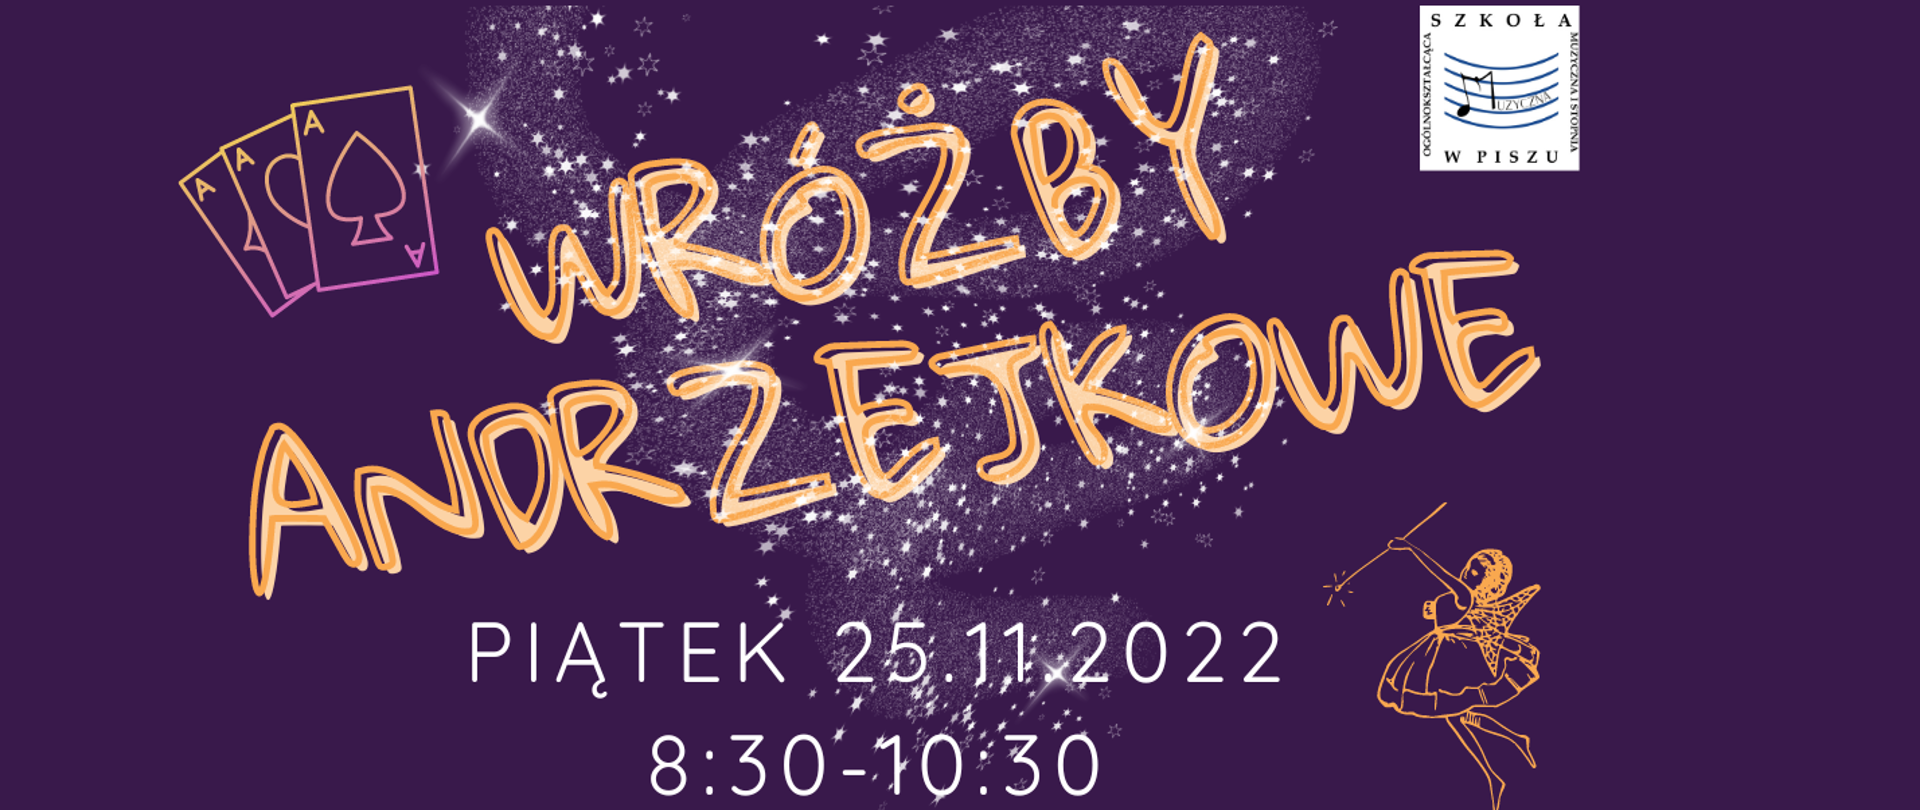 Plakat na fioletowym tle. Gwiazdki, wróżka, świecznik i klucz. Adrzejki odbędą się 25 listopada 2022r. od godz. 8.30 do 10. 30. Organizatorem jest II klasa OSM I st. w Piszu